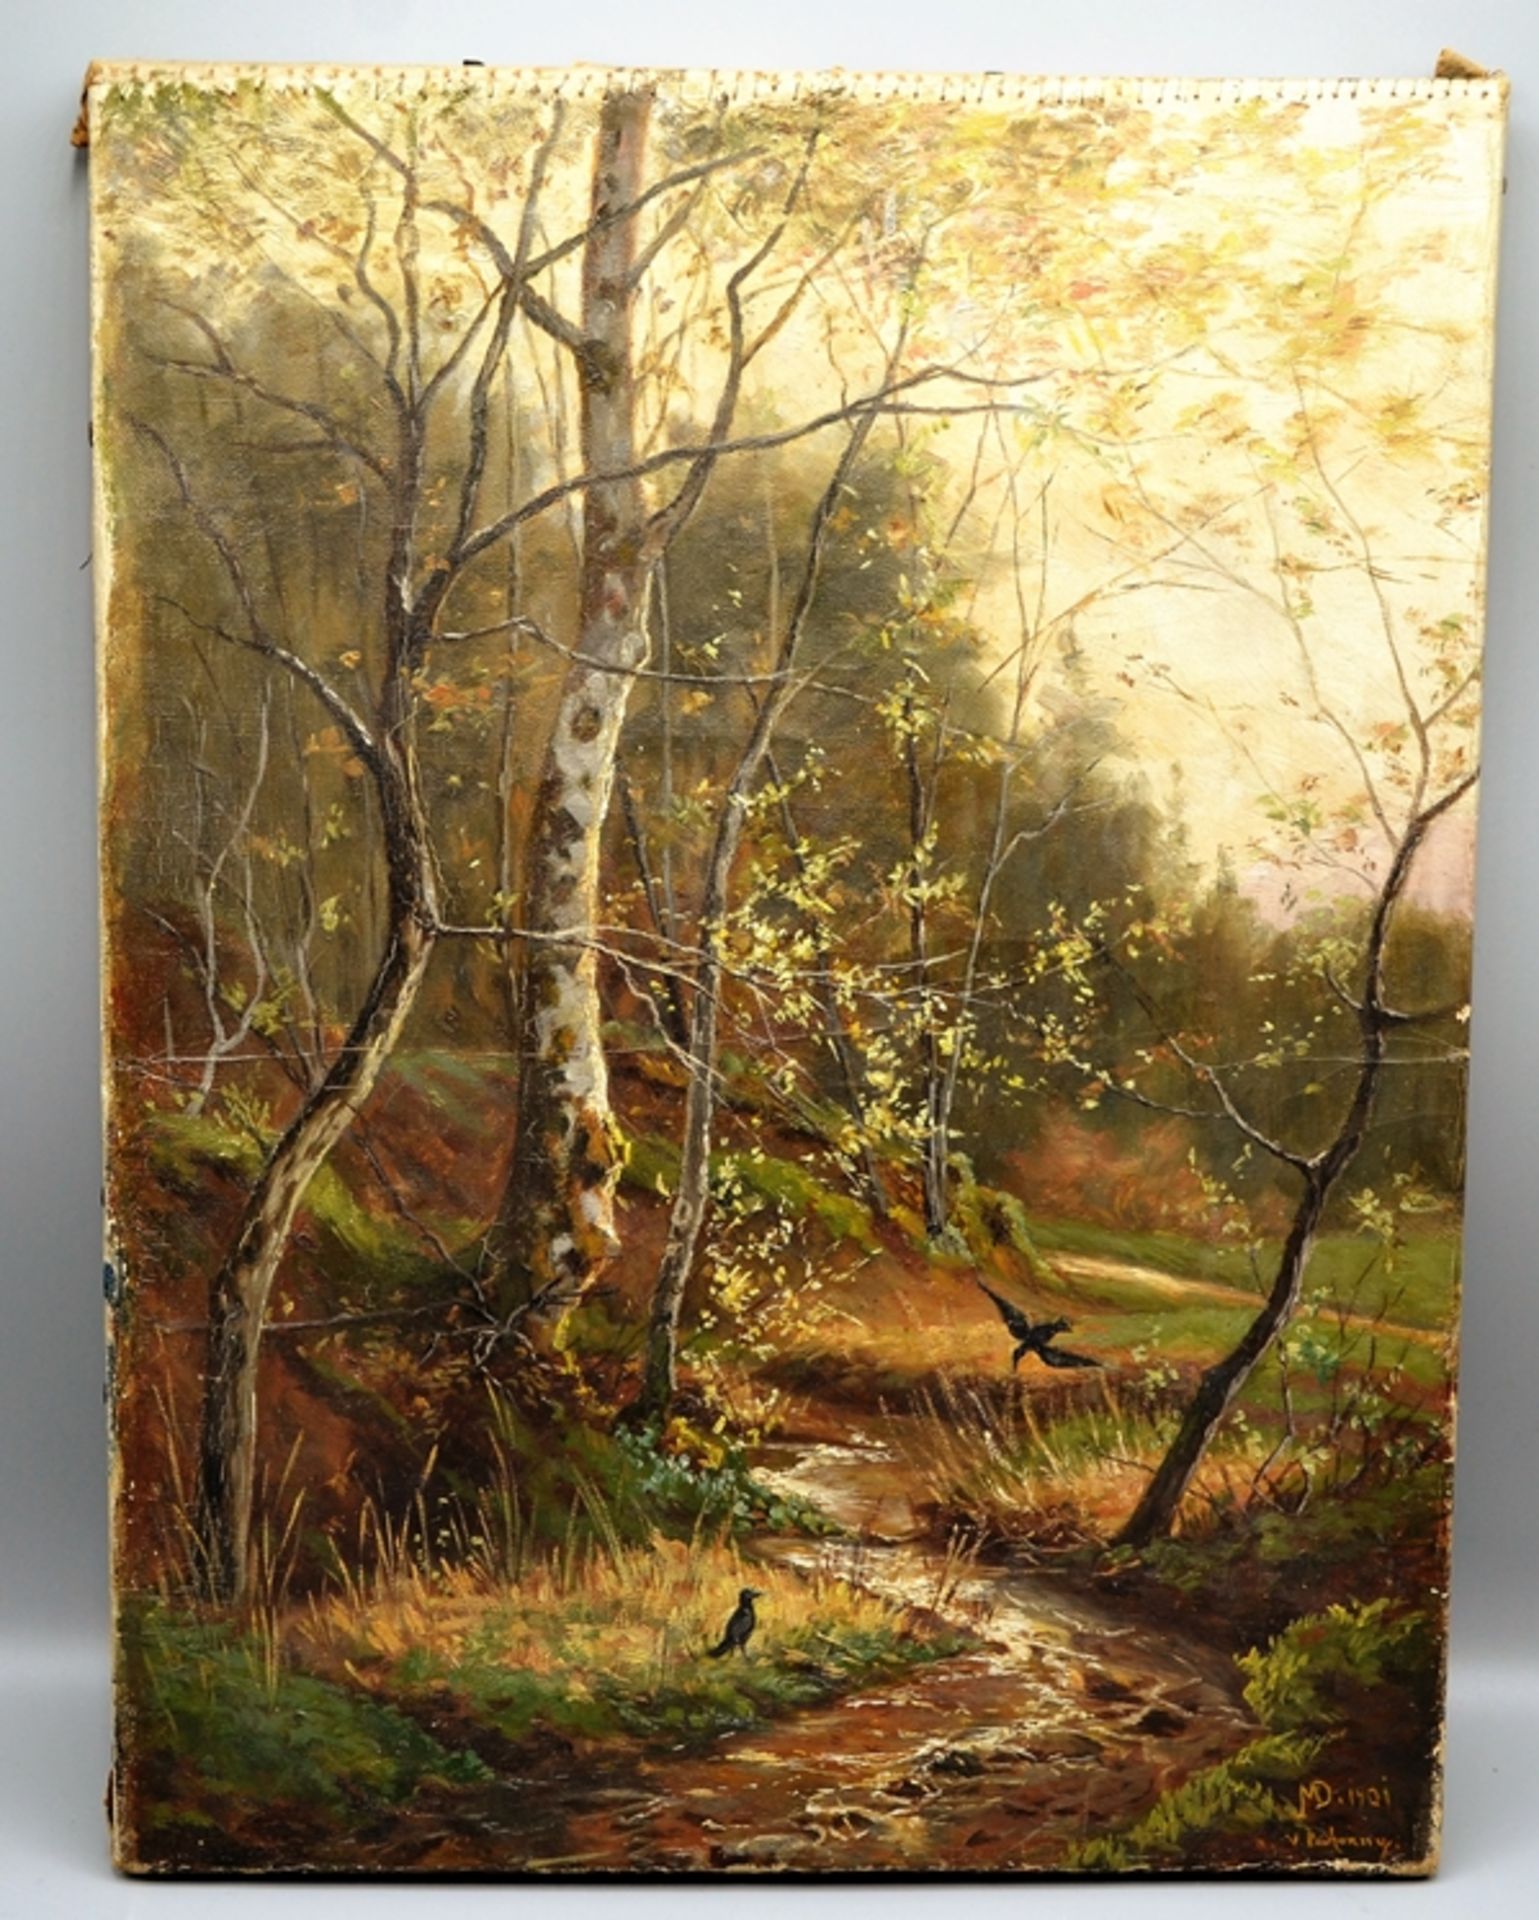 Gemälde Waldlandschaft mit Bachlauf Vögel etc. 1901, Öl auf Lwd., datiert u. signiert, ca. 45 x 34